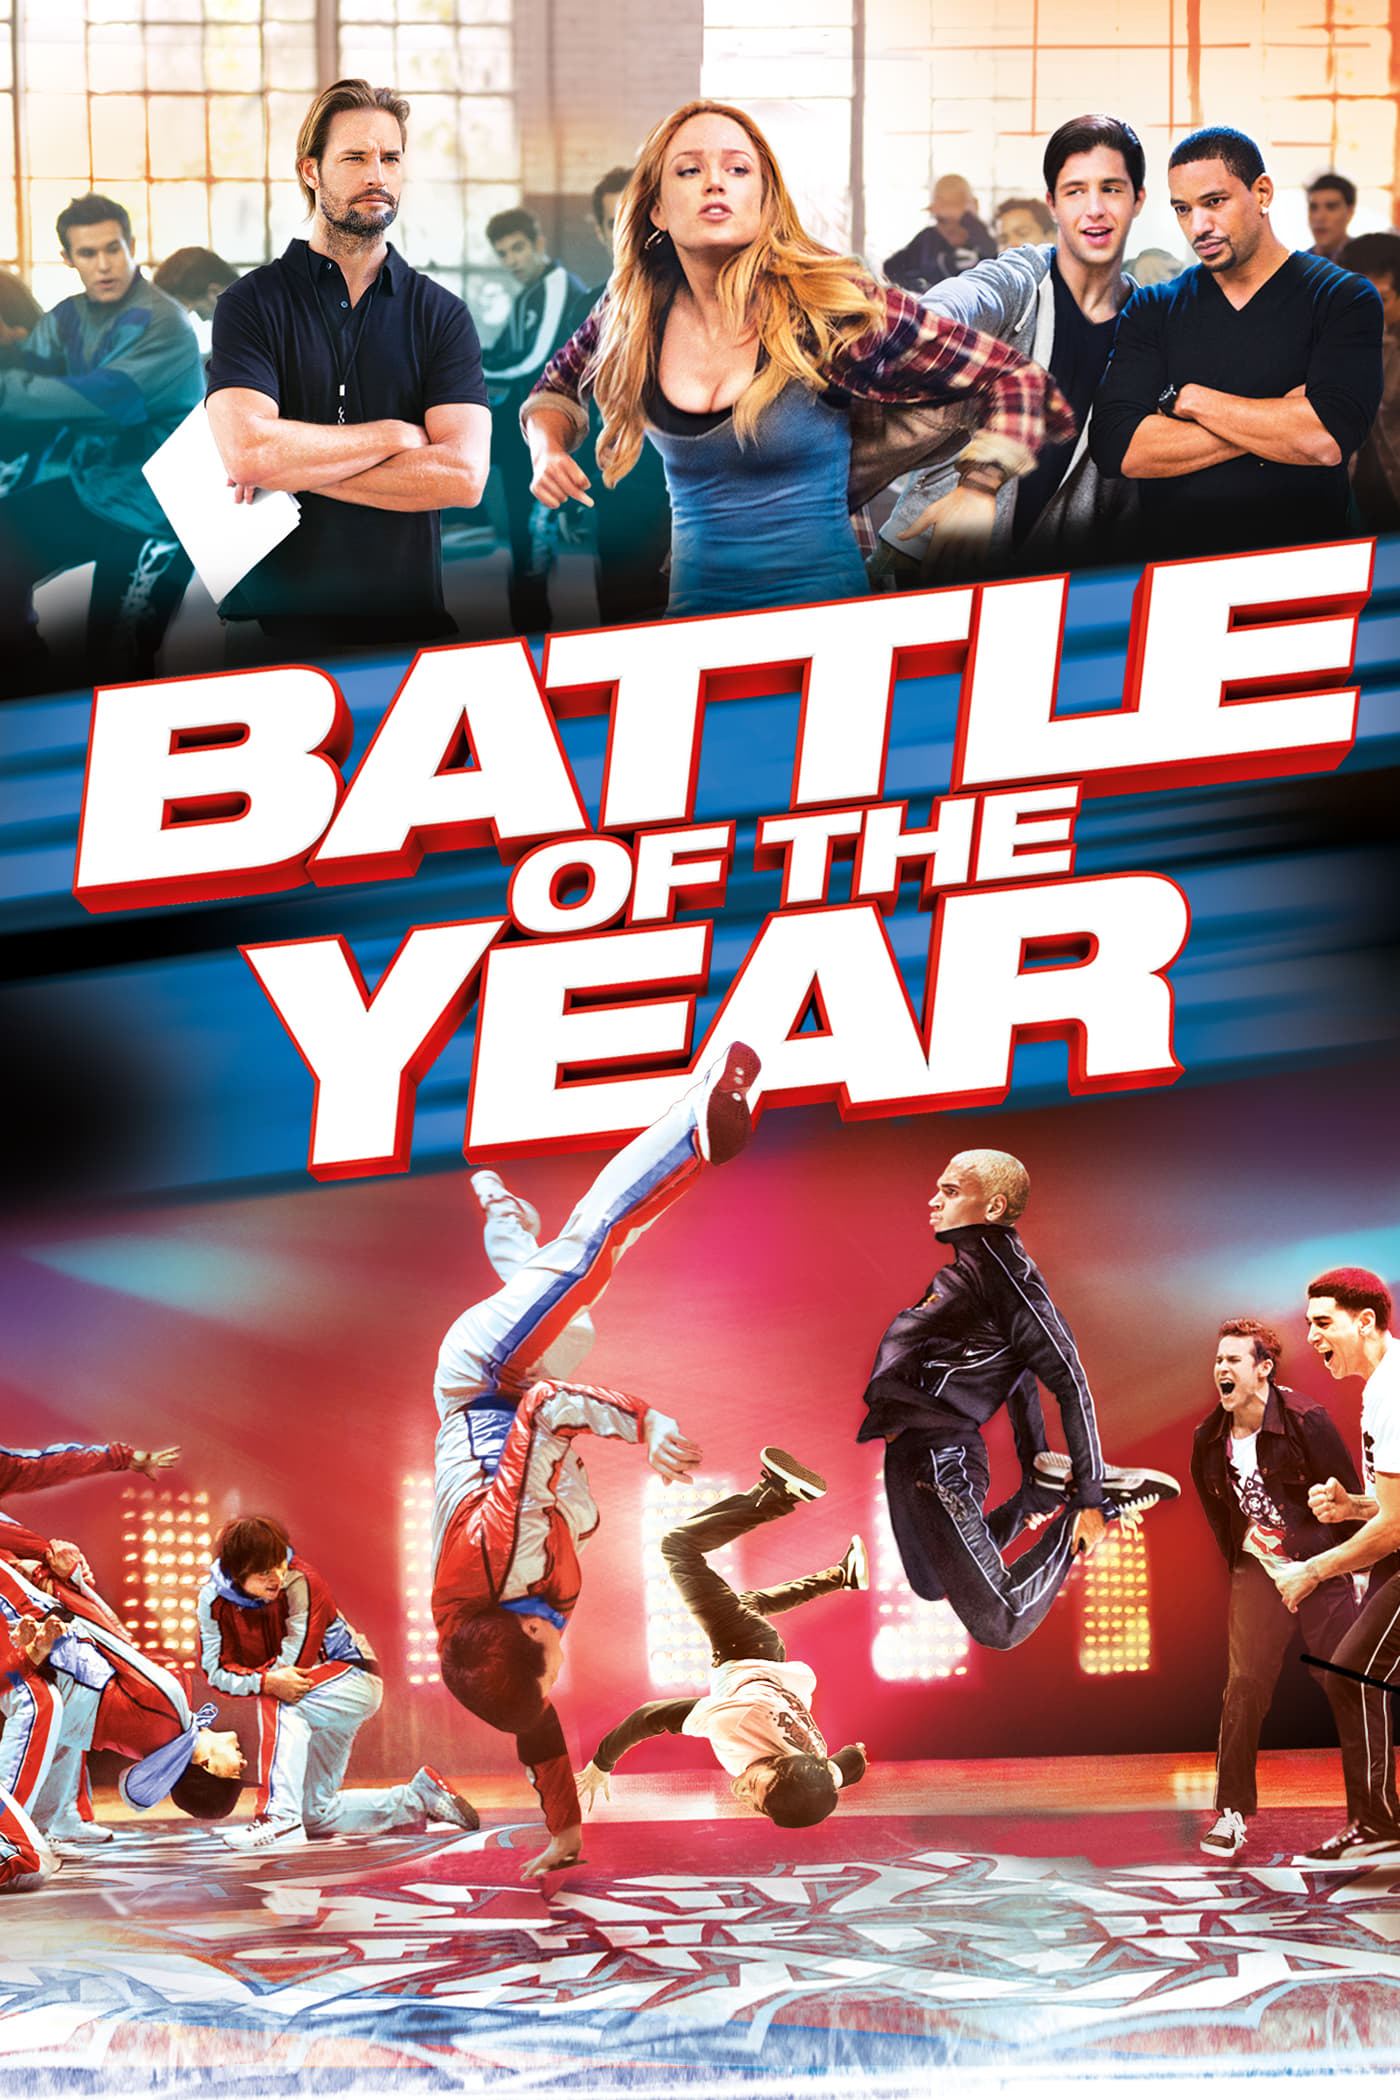 Plakat von "Battle of the Year"